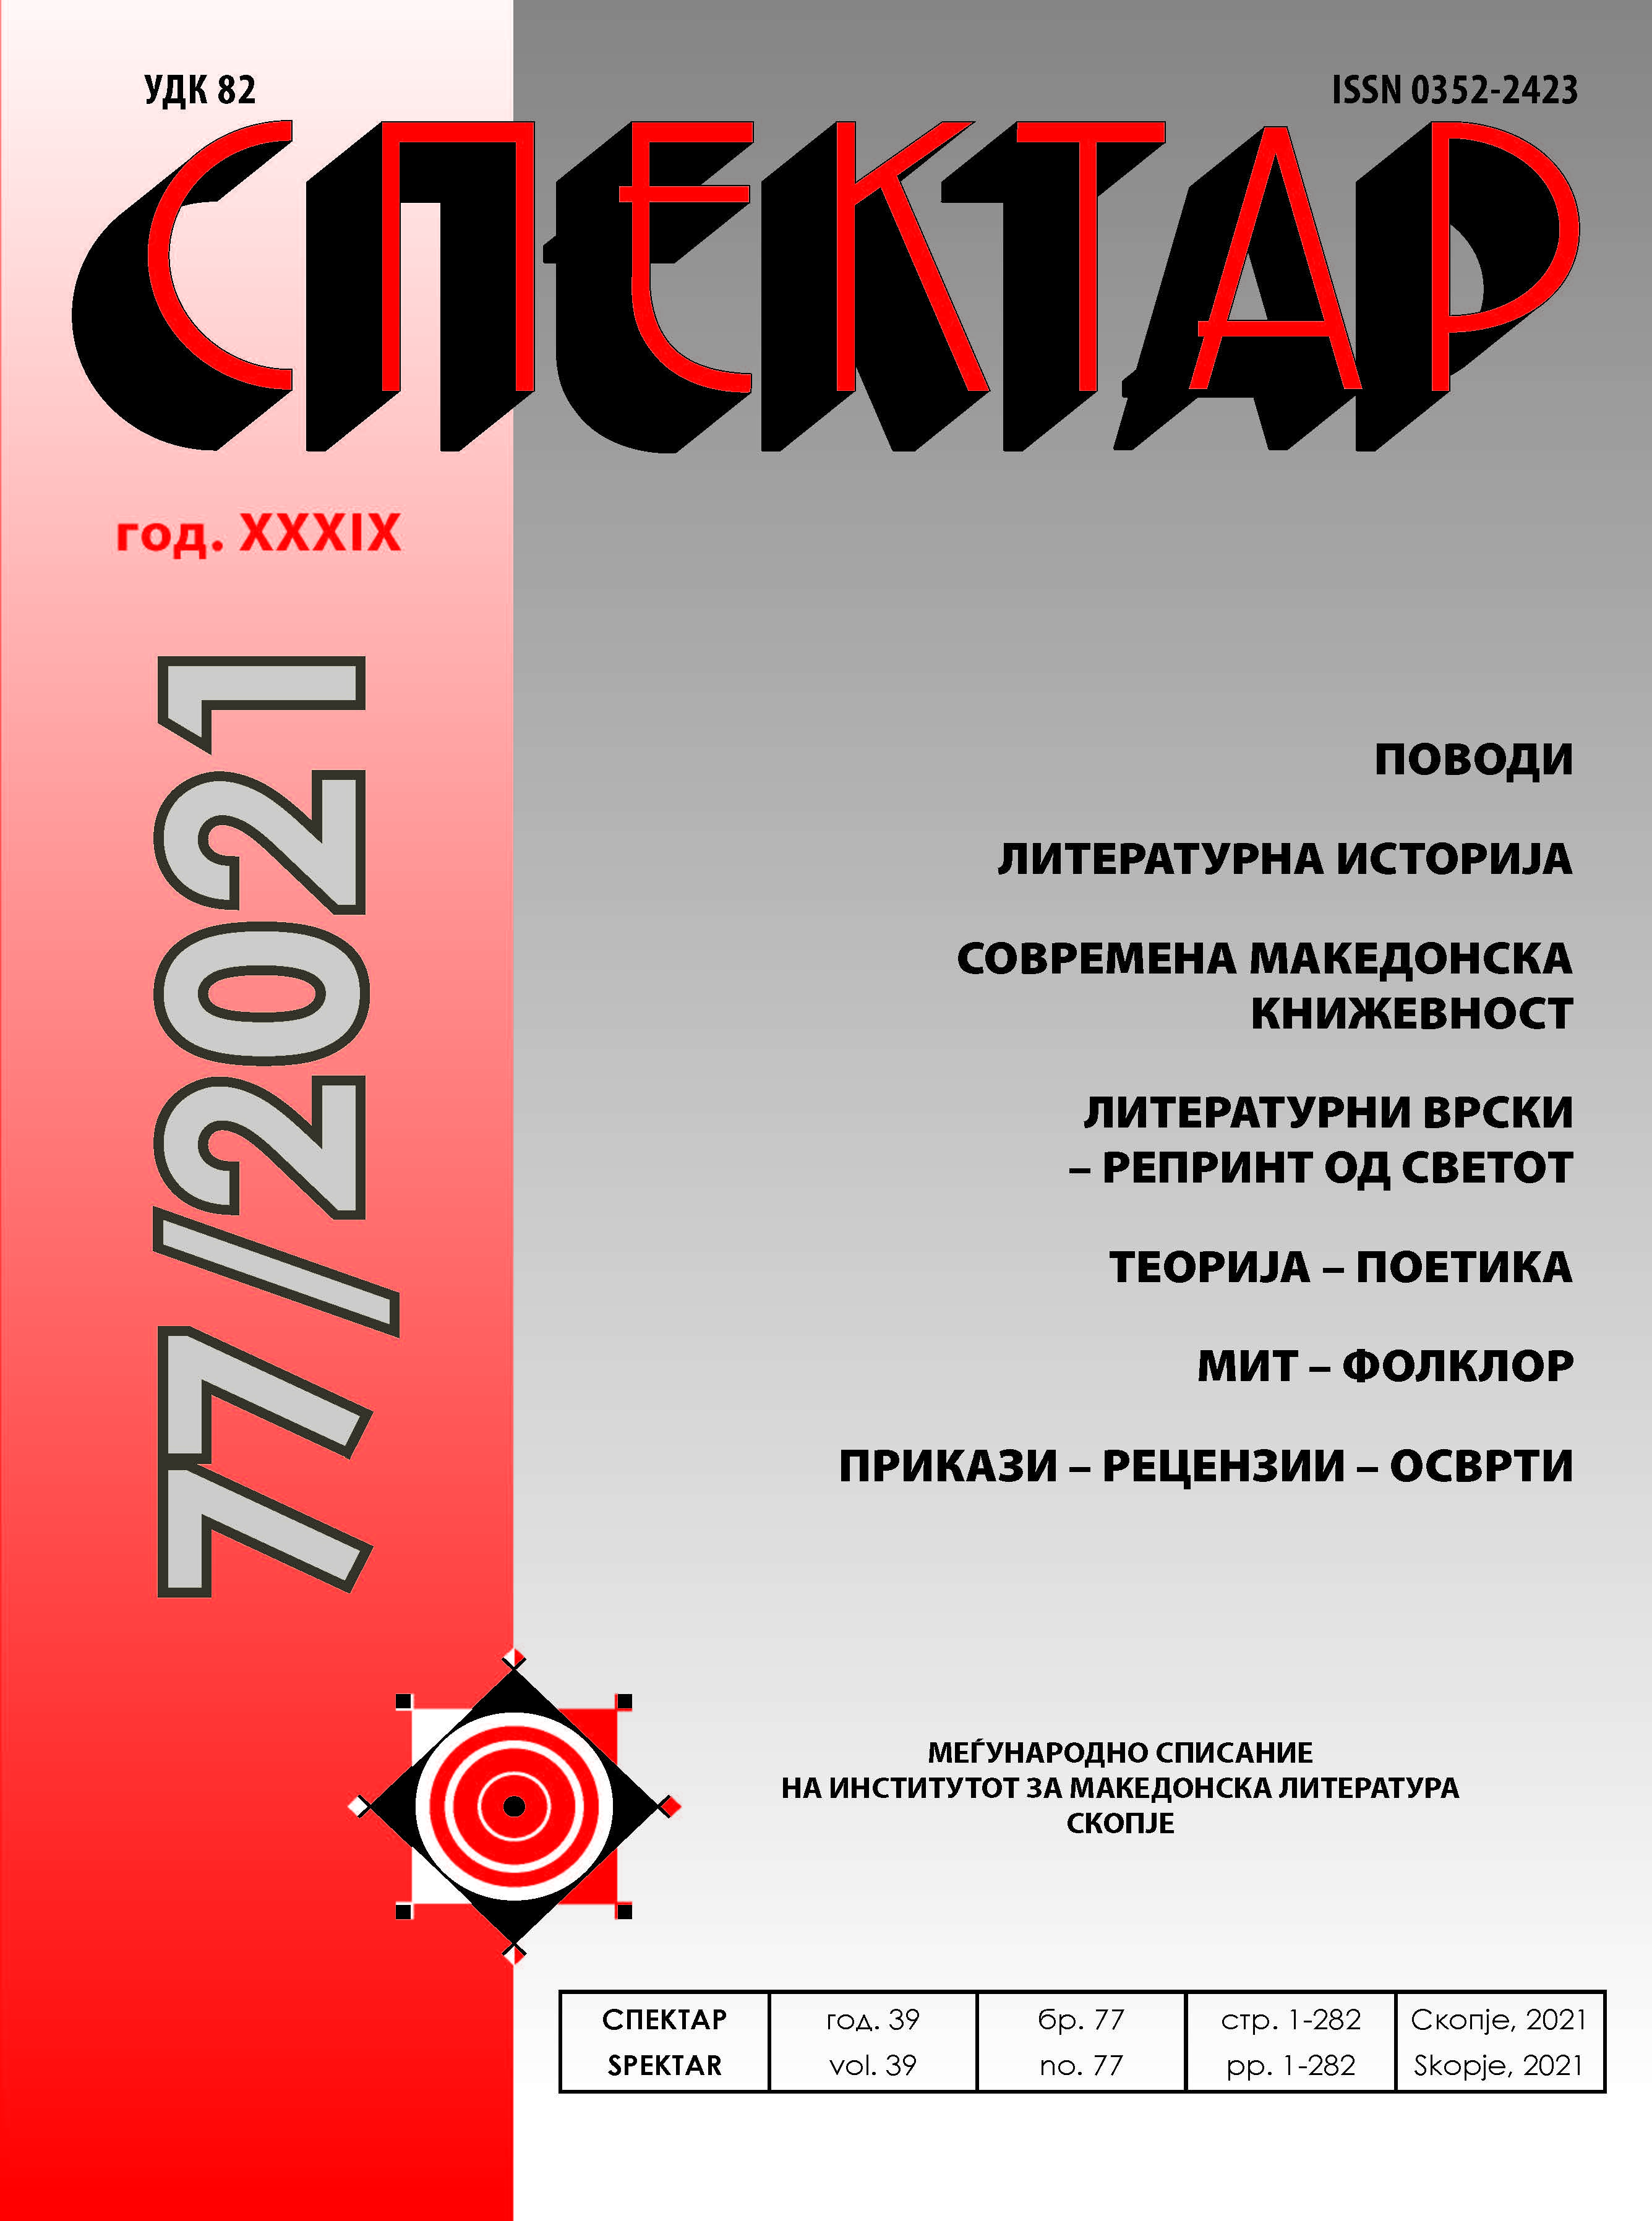 KOLE ČAŠULE’S LITERARY ARCHIVE Cover Image